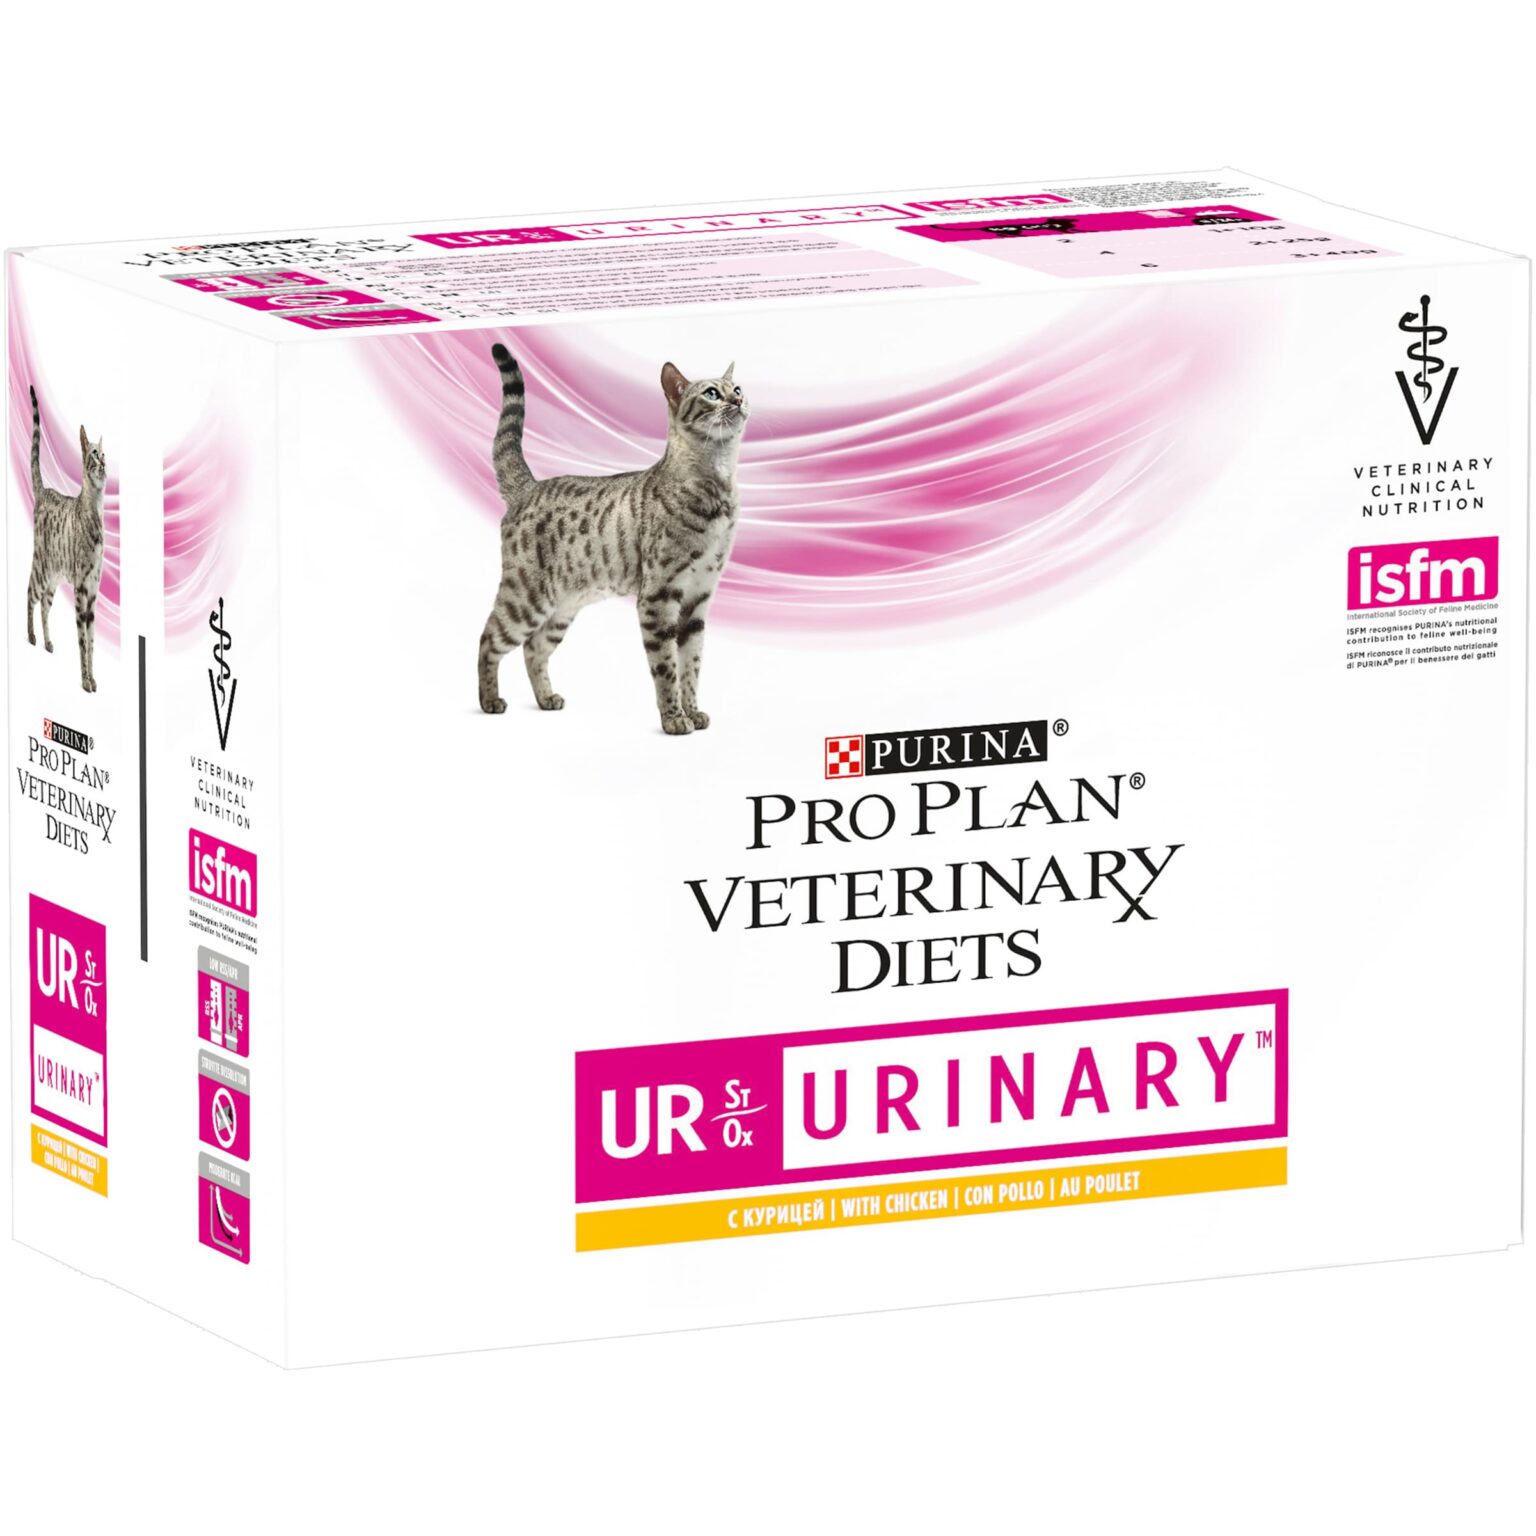 Купить корм pro plan veterinary diets. Purina Urinary. Urinary для кошек. Pro Plan Urinary для кошек. Влажный корм для кошек Уринари.